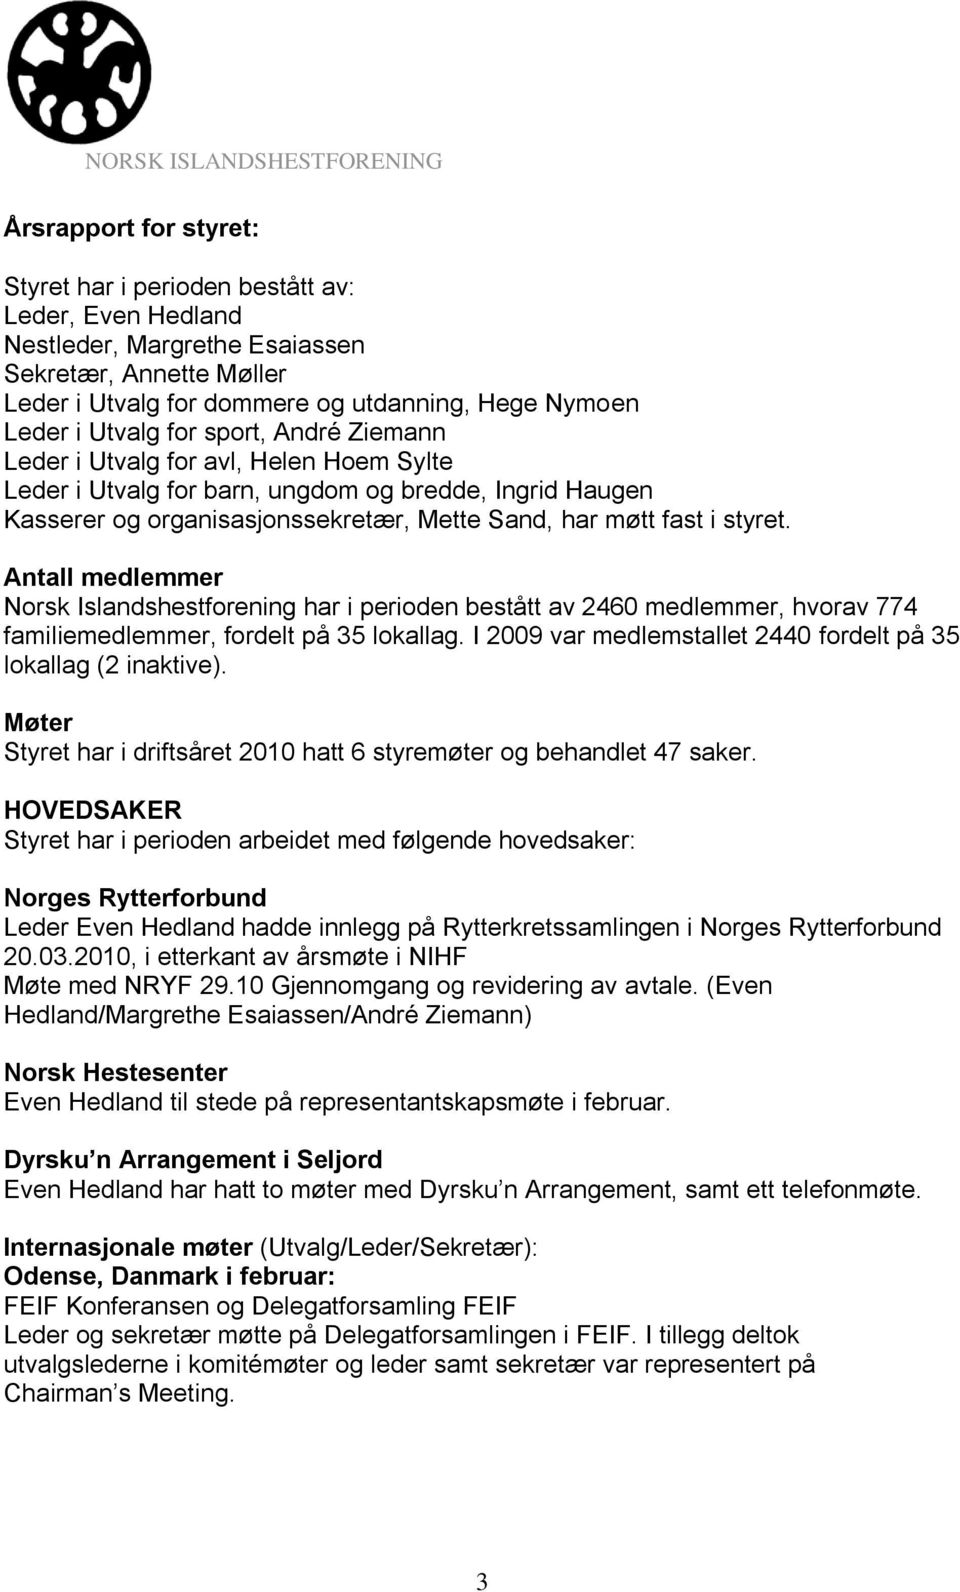 Antall medlemmer Norsk Islandshestforening har i perioden bestått av 2460 medlemmer, hvorav 774 familiemedlemmer, fordelt på 35 lokallag.